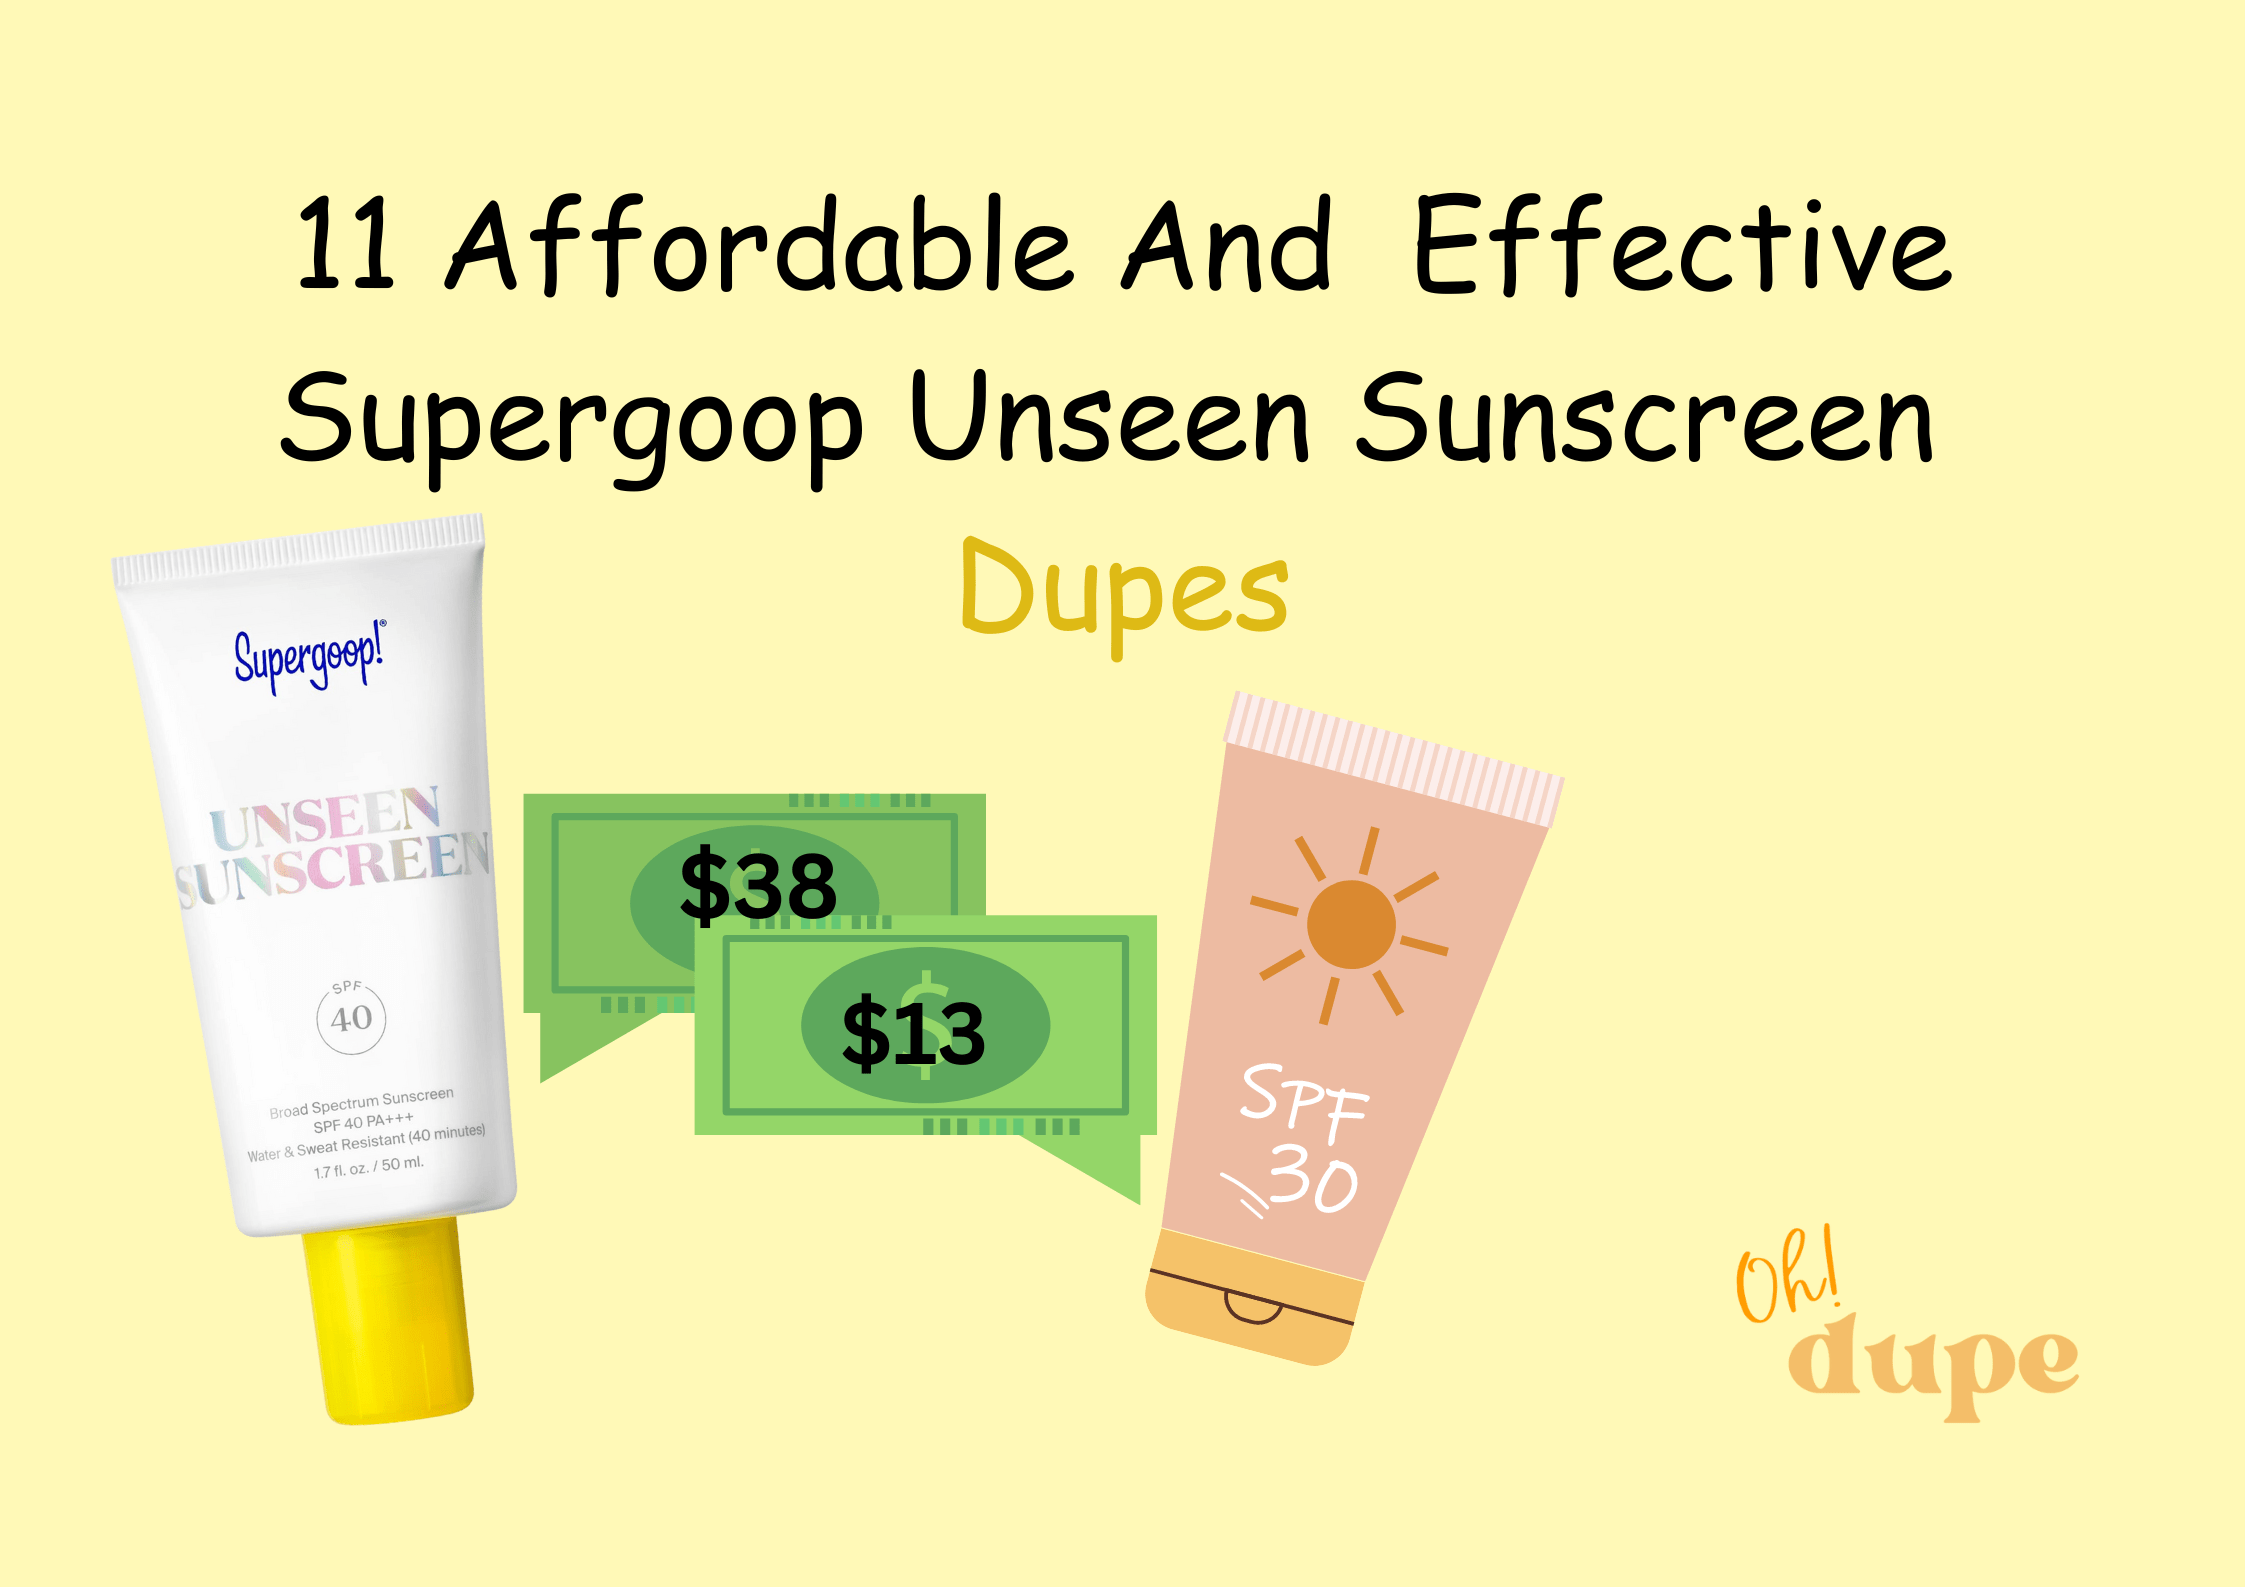 Supergoop Unseen Sunscreen Dupe